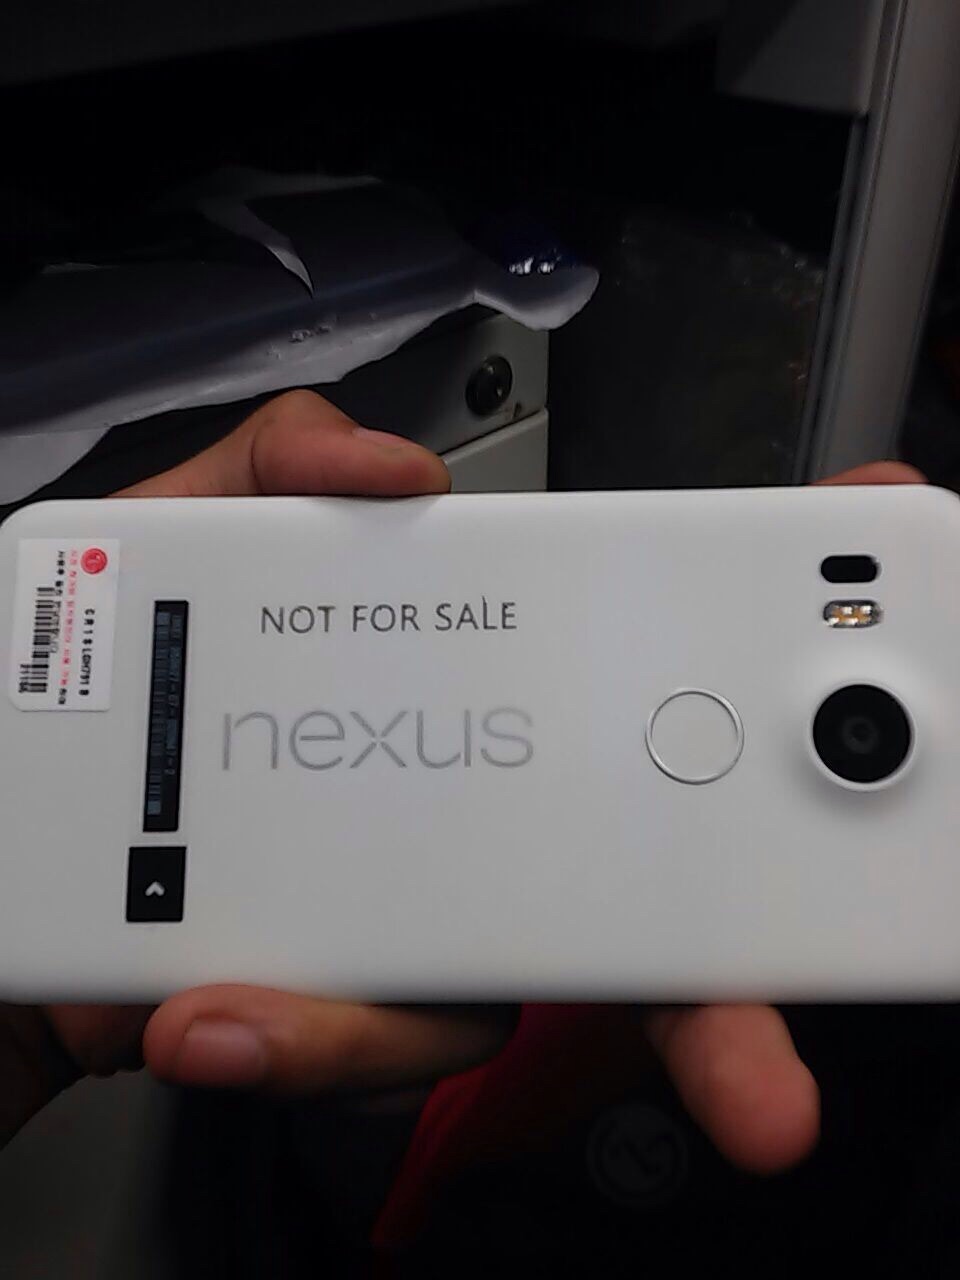 LG Nexus 5 (2015) leak